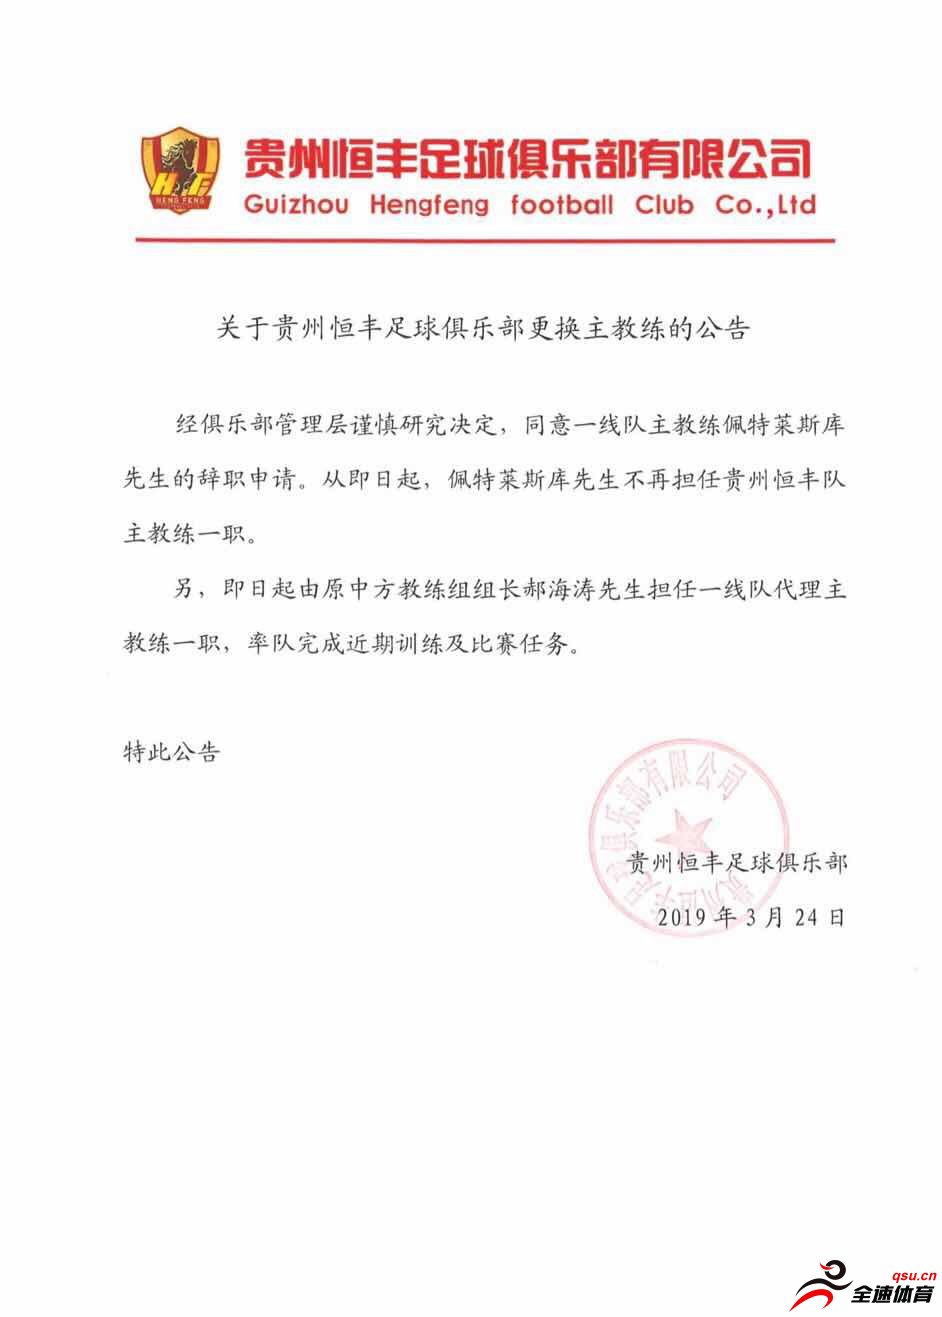 贵州恒丰同意主教练佩特莱斯库的辞职申请